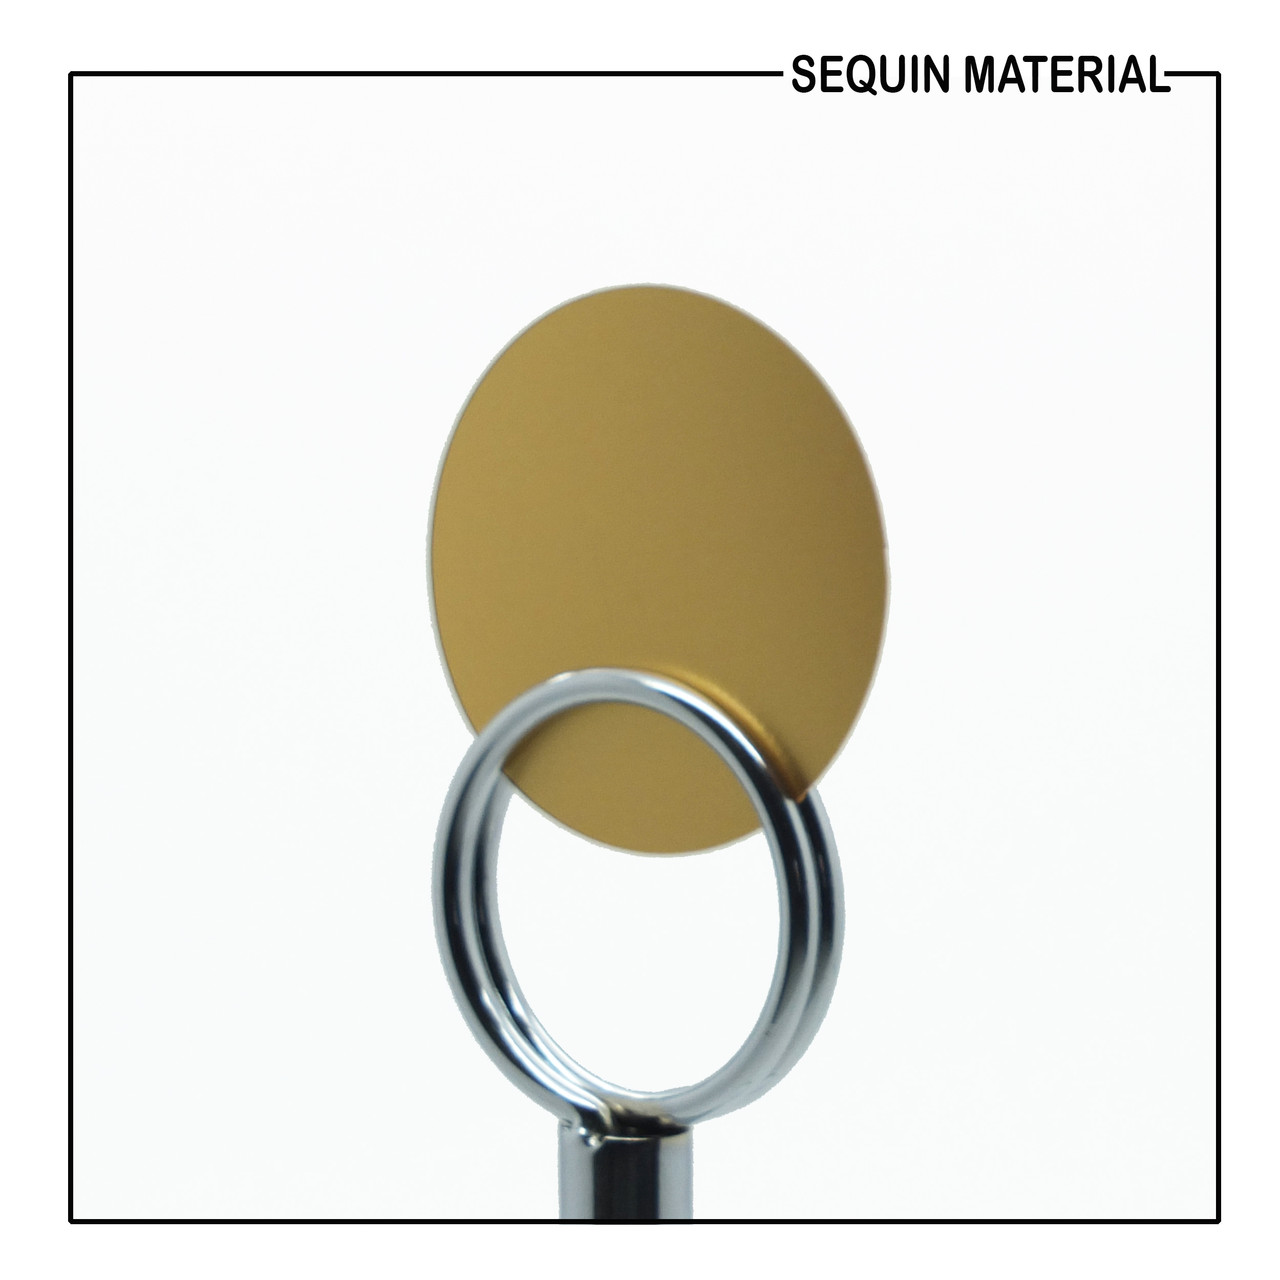 SequinsUSA Gold Matte Satin Shimmer Sequin Material Film RL860